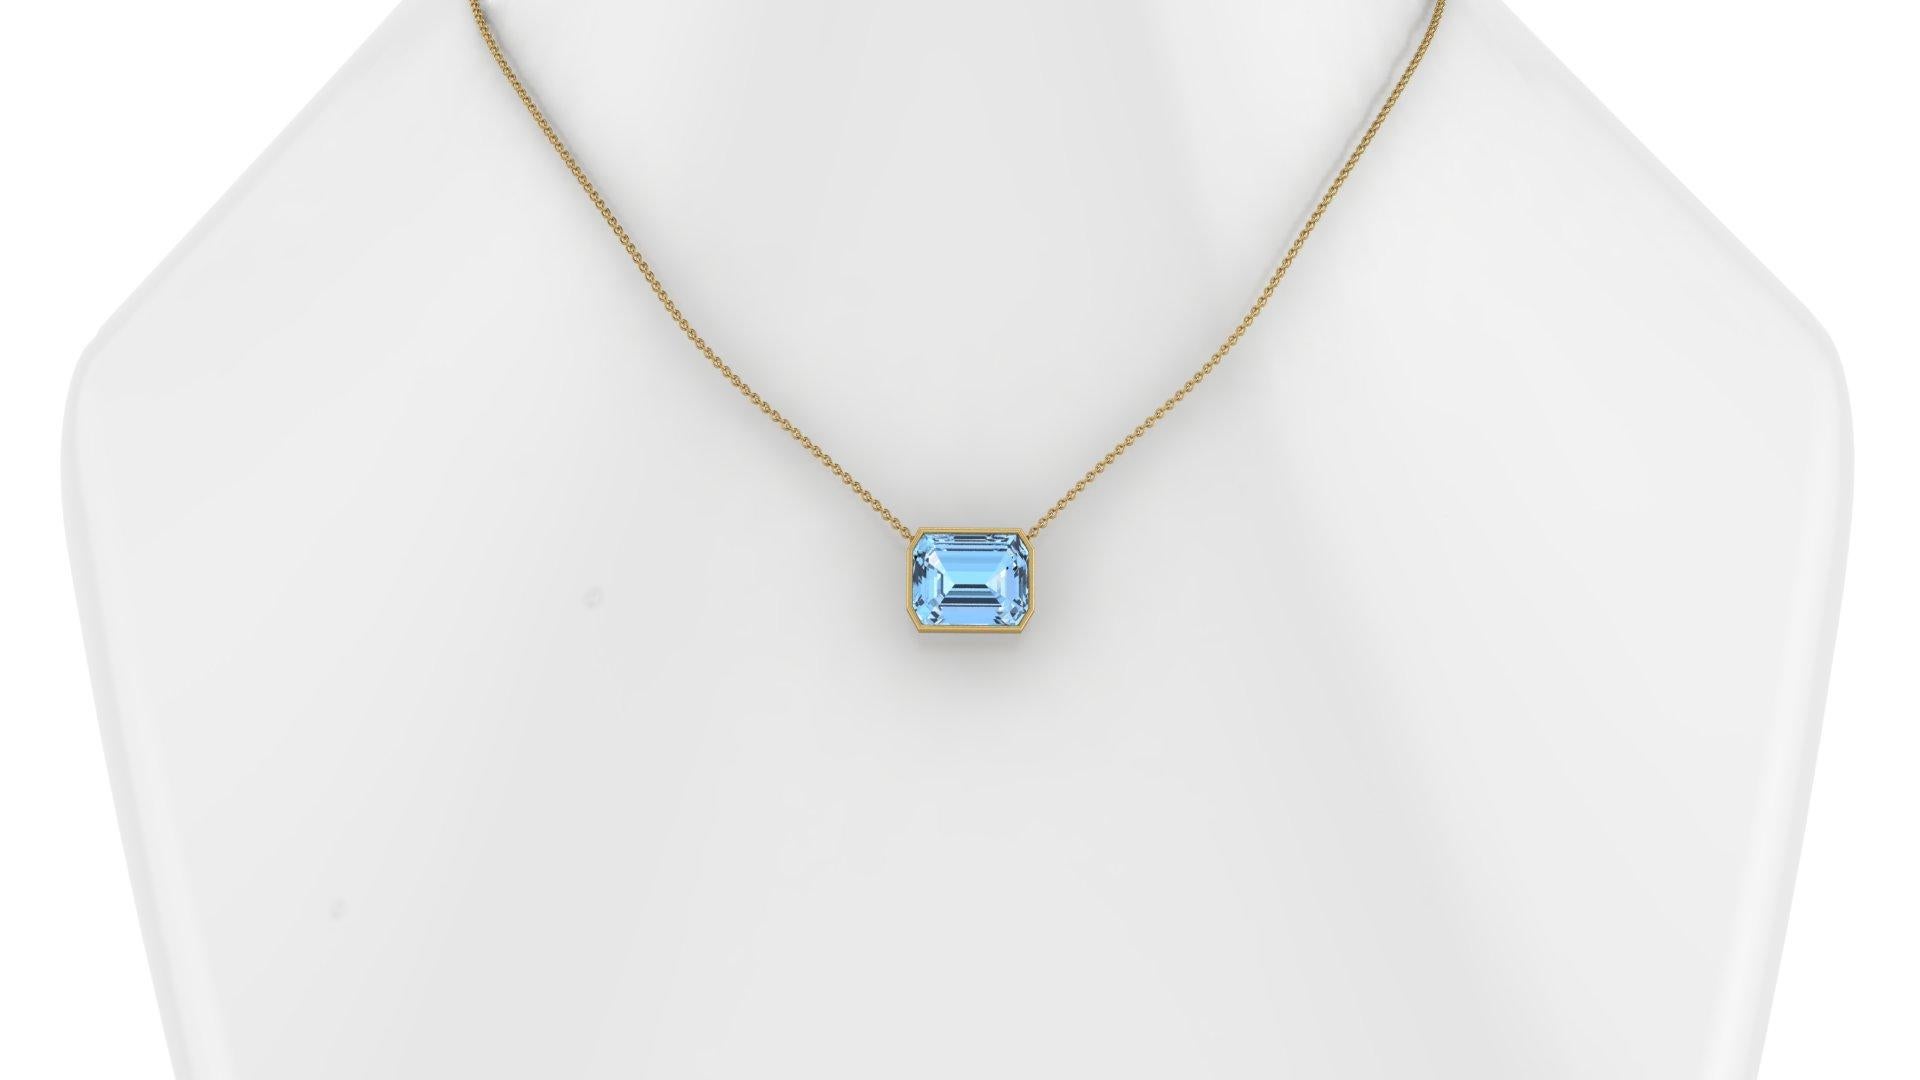 10.39 Karat Smaragdschliff Aquamarin in 18K Gold dünne Lünette Halskette Anhänger
Die Länge der Halskette kann auf 18